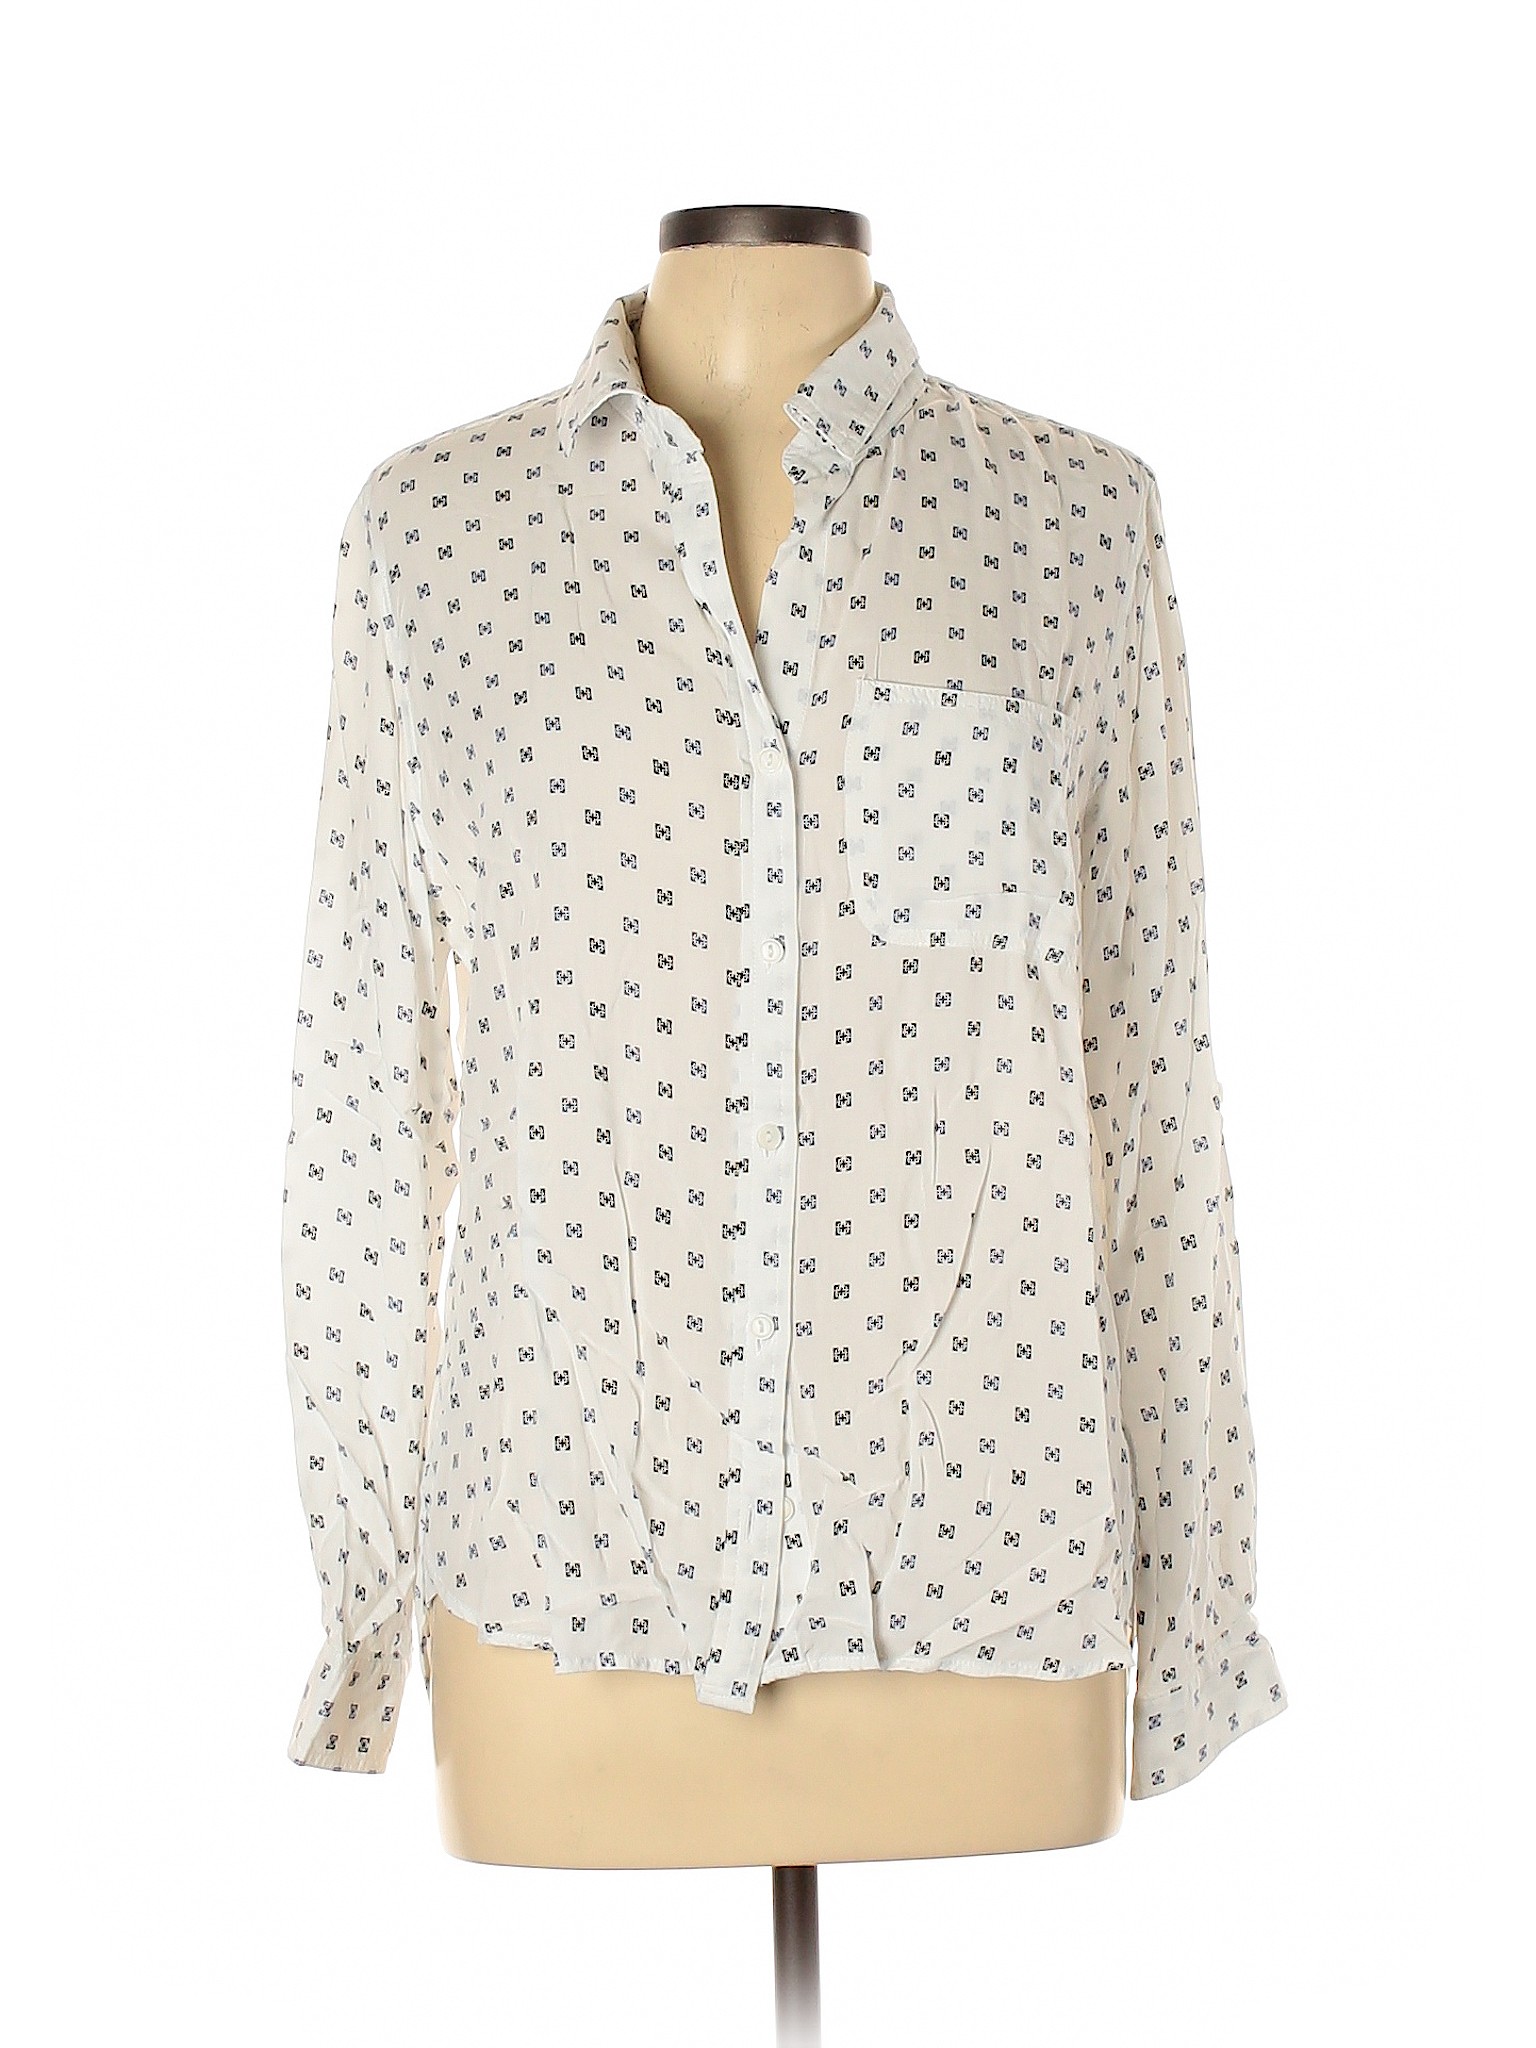 Velvet Heart Women White Long Sleeve Button-Down Shirt L | eBay